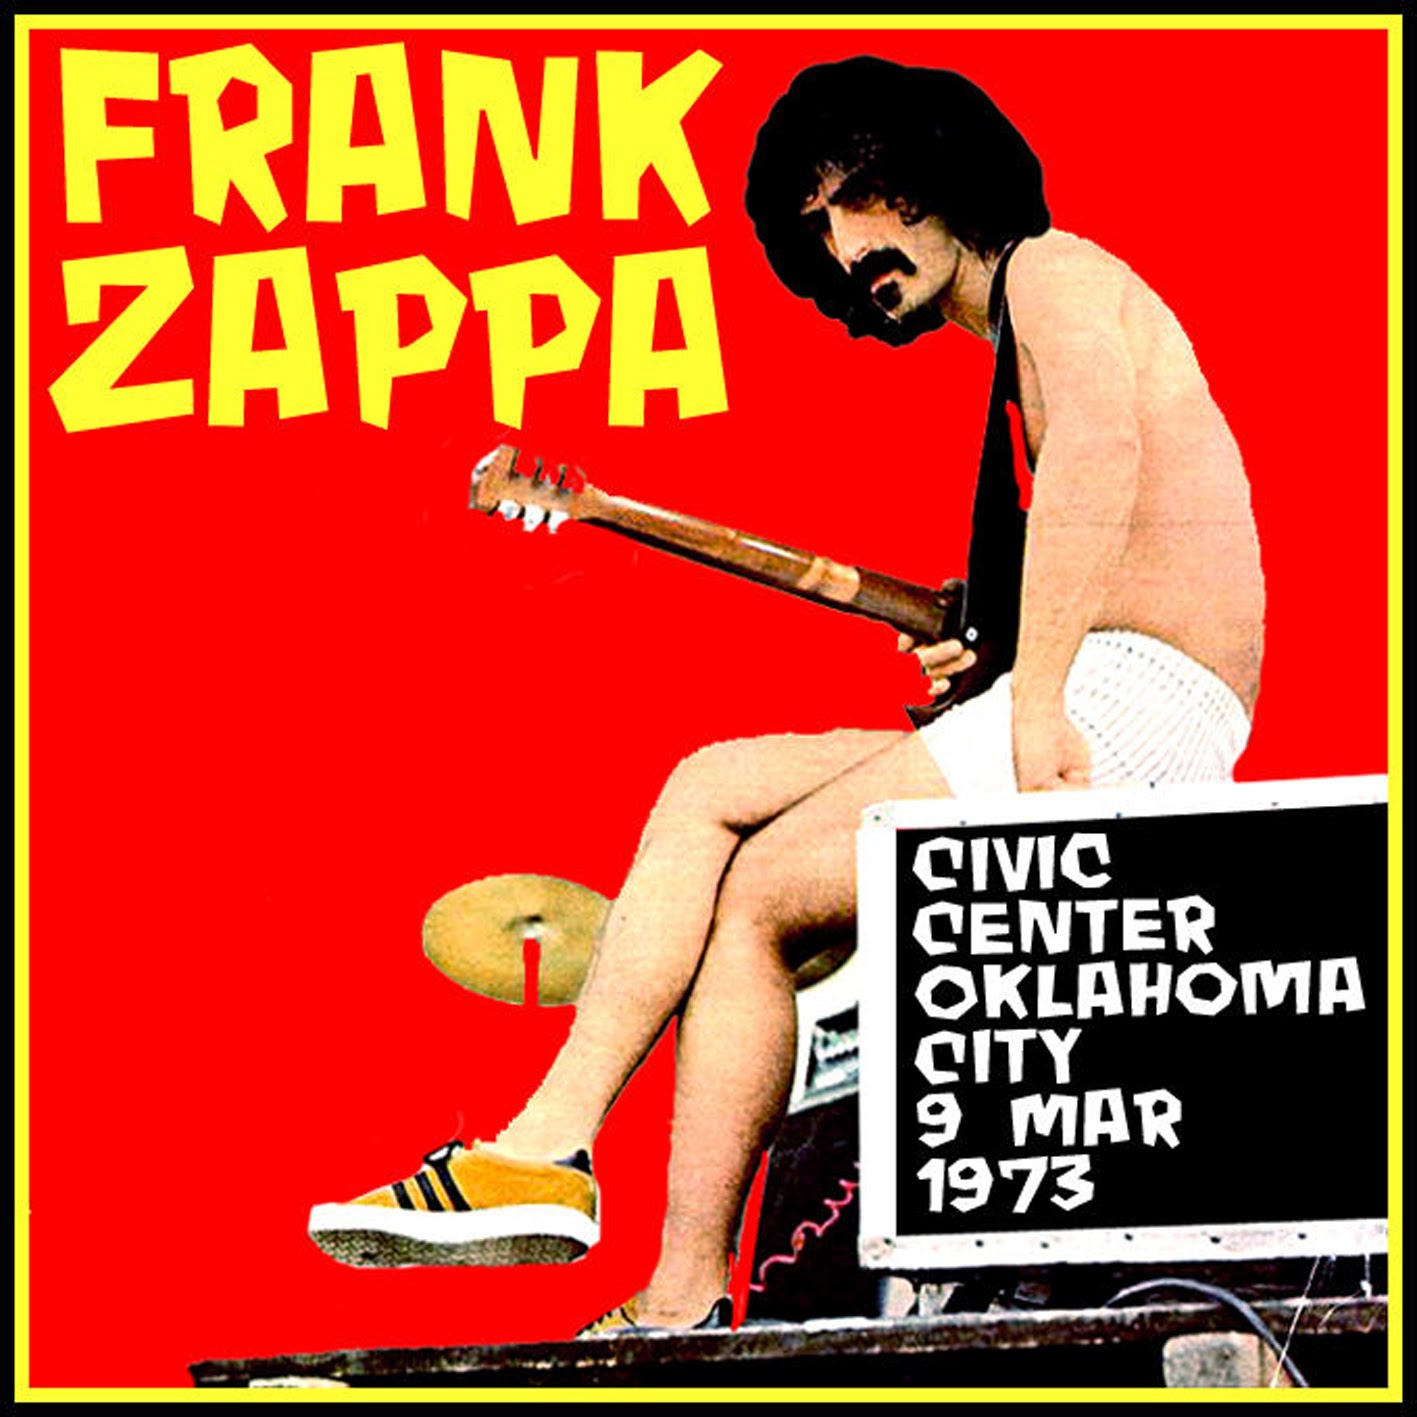 ... That Went Backwards Again: Frank Zappa - 1973-03-09 - Oklahoma City